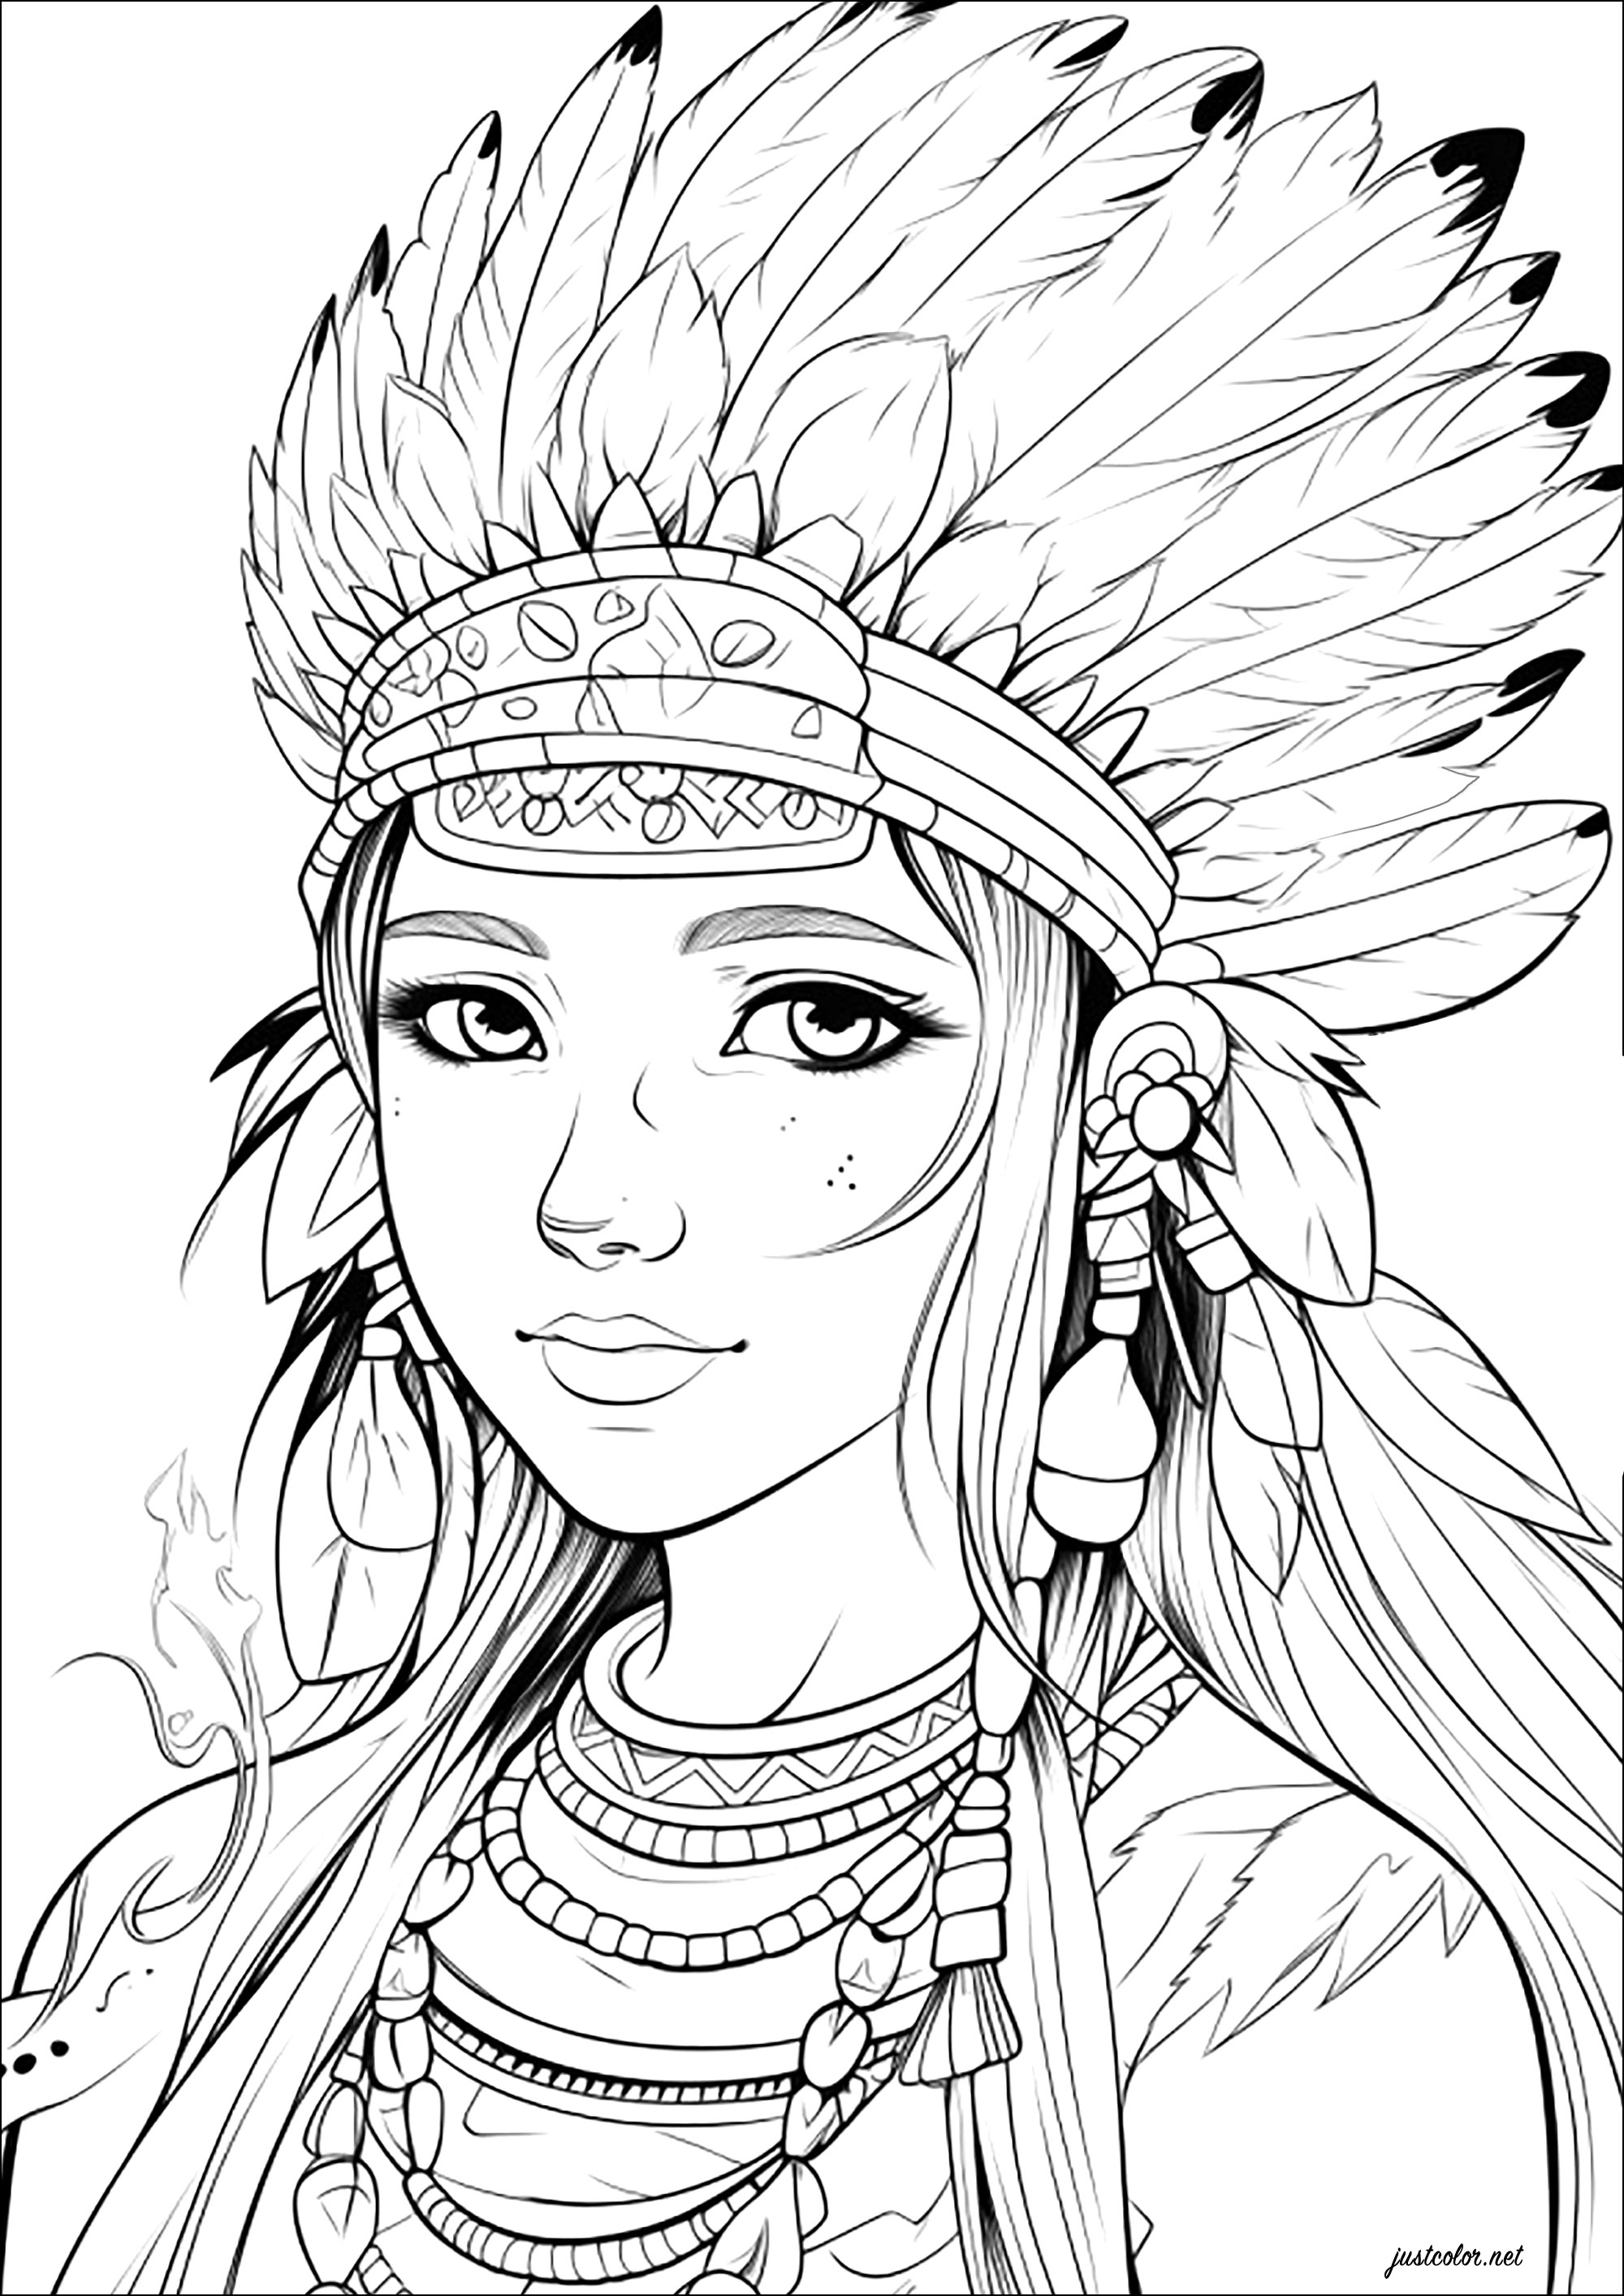 Mujer joven con tocado de indio americano. Imagina que este personaje es la hija del jefe de una tribu india americana, ¡y te divertirás coloreando!